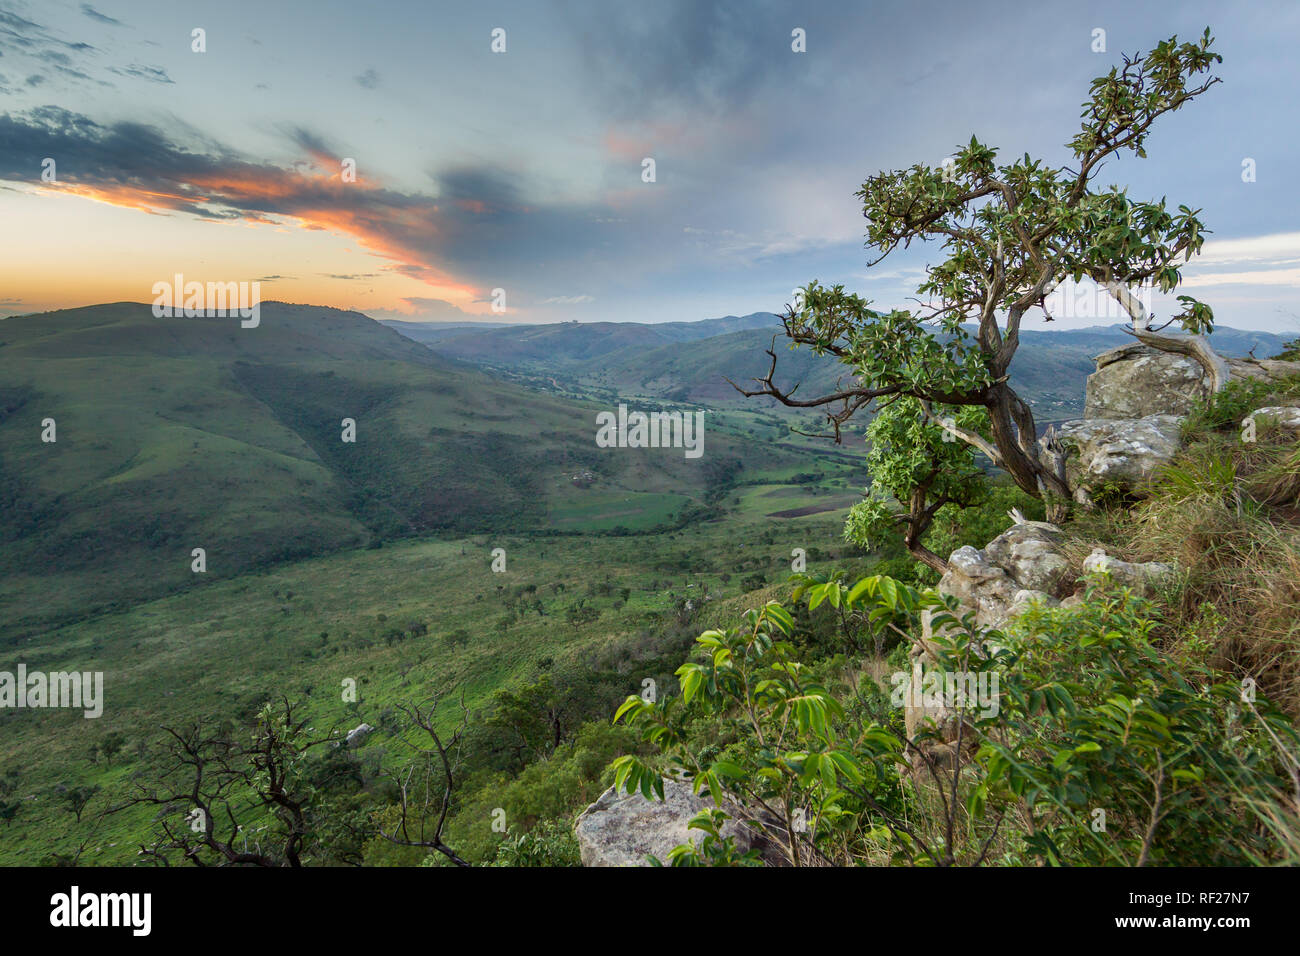 Ländliche Gebiete in KwaZulu-Natal, Südafrika, verfügen über kleine Weide- und Landwirtschaft auf die sanften, grünen Hügel. Dieses Tal ist von Hluhluwe gesehen Stockfoto